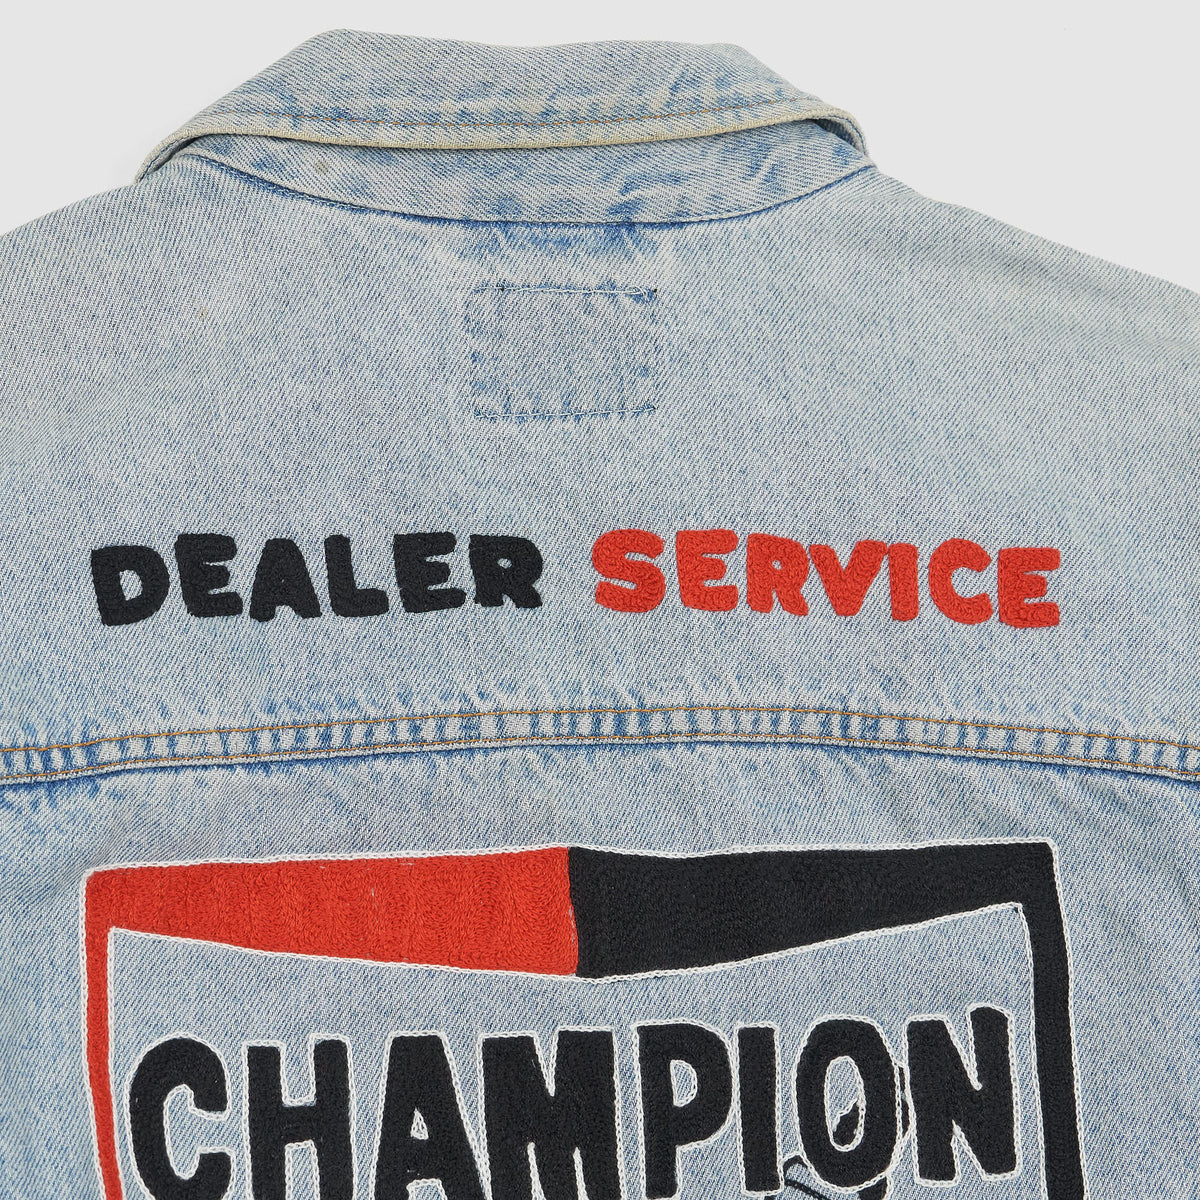 Original Kettenstich Champion Denim Jacket